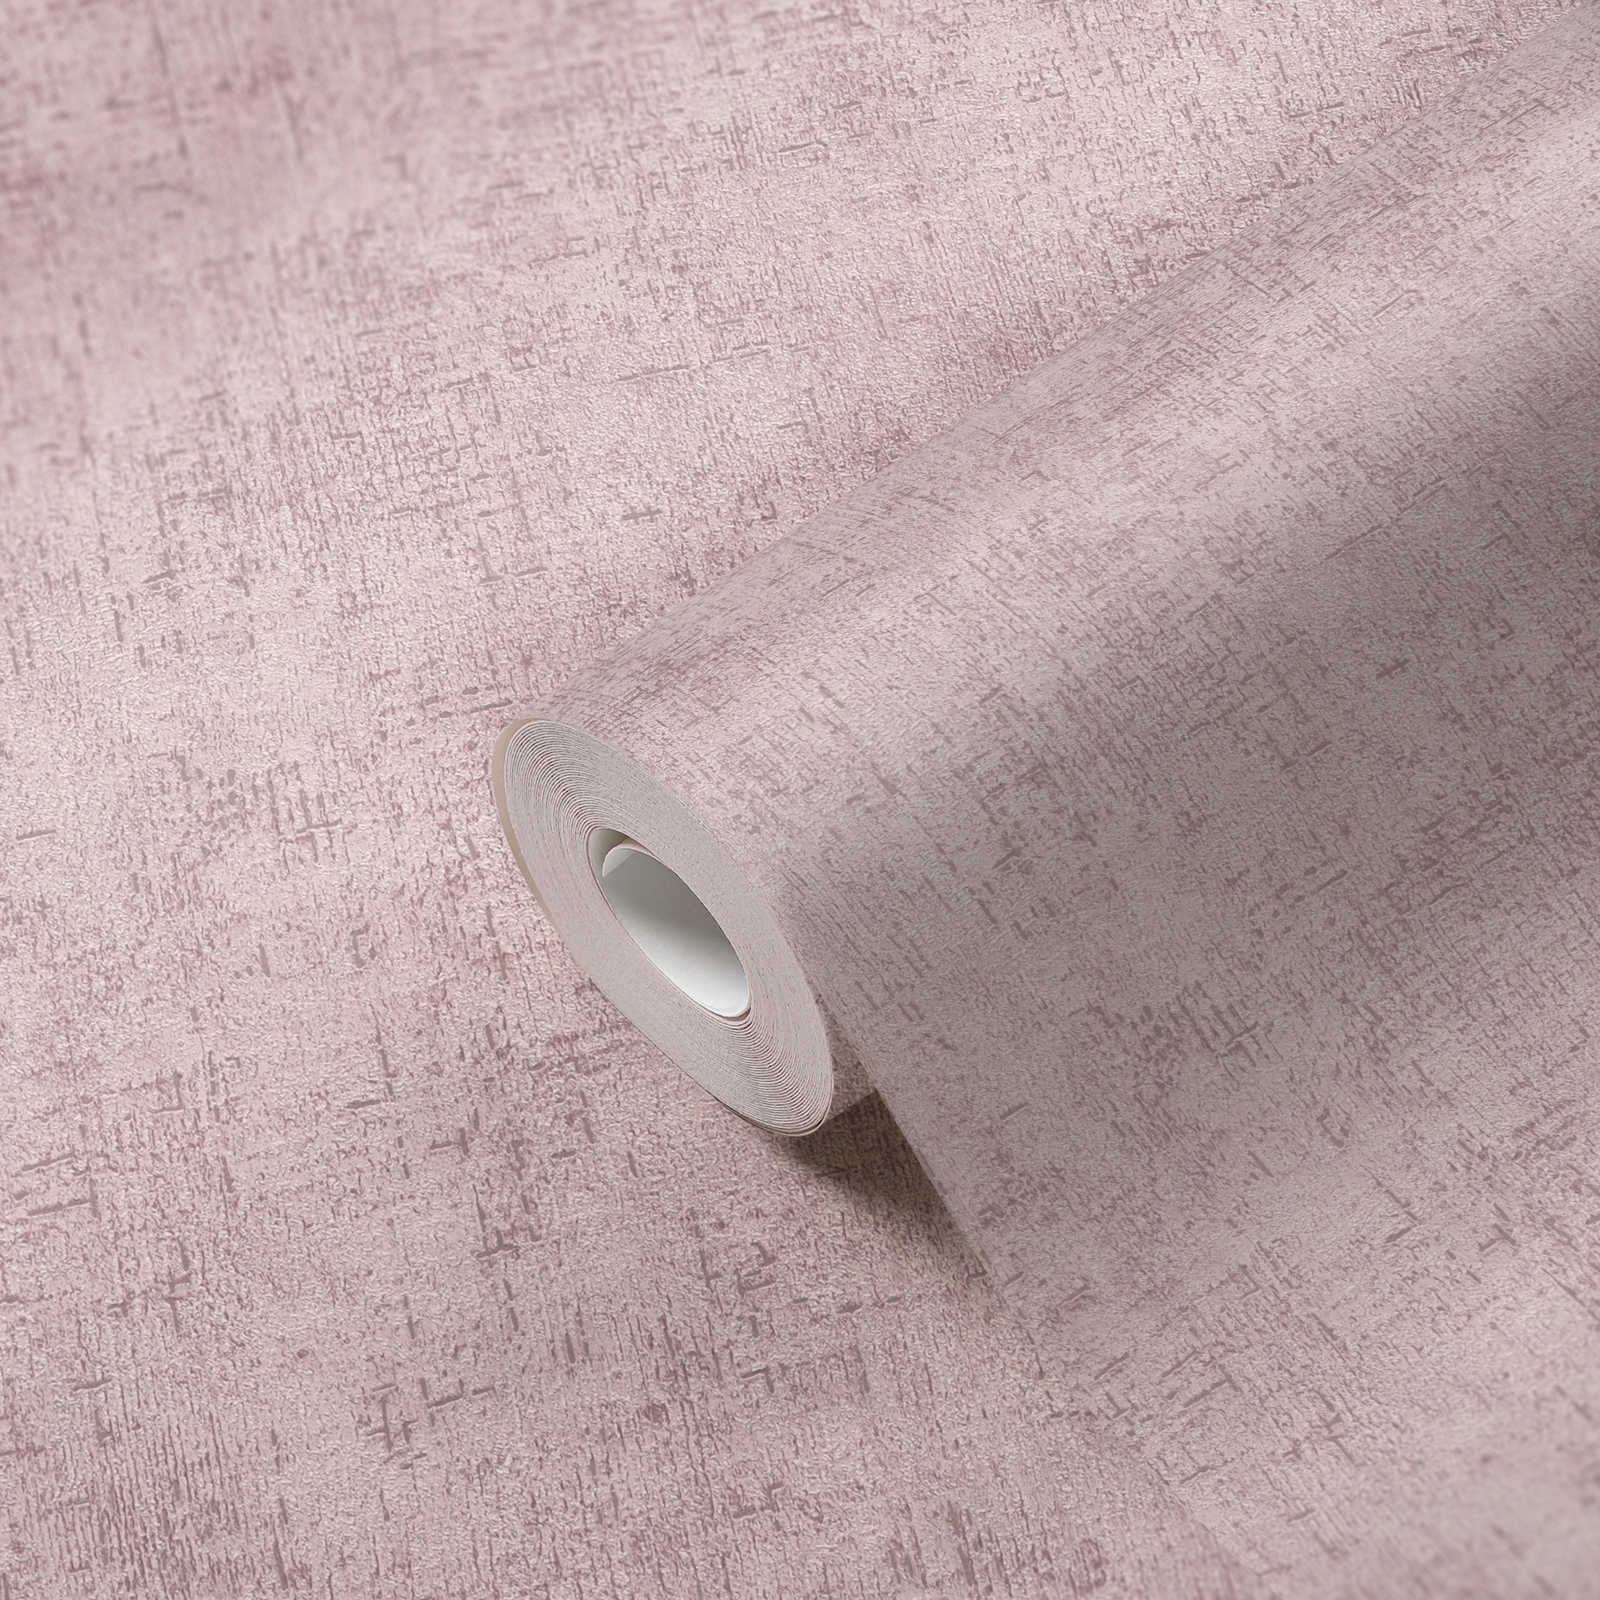             papier peint en papier intissé rustique structure plâtre - rose, brillant
        